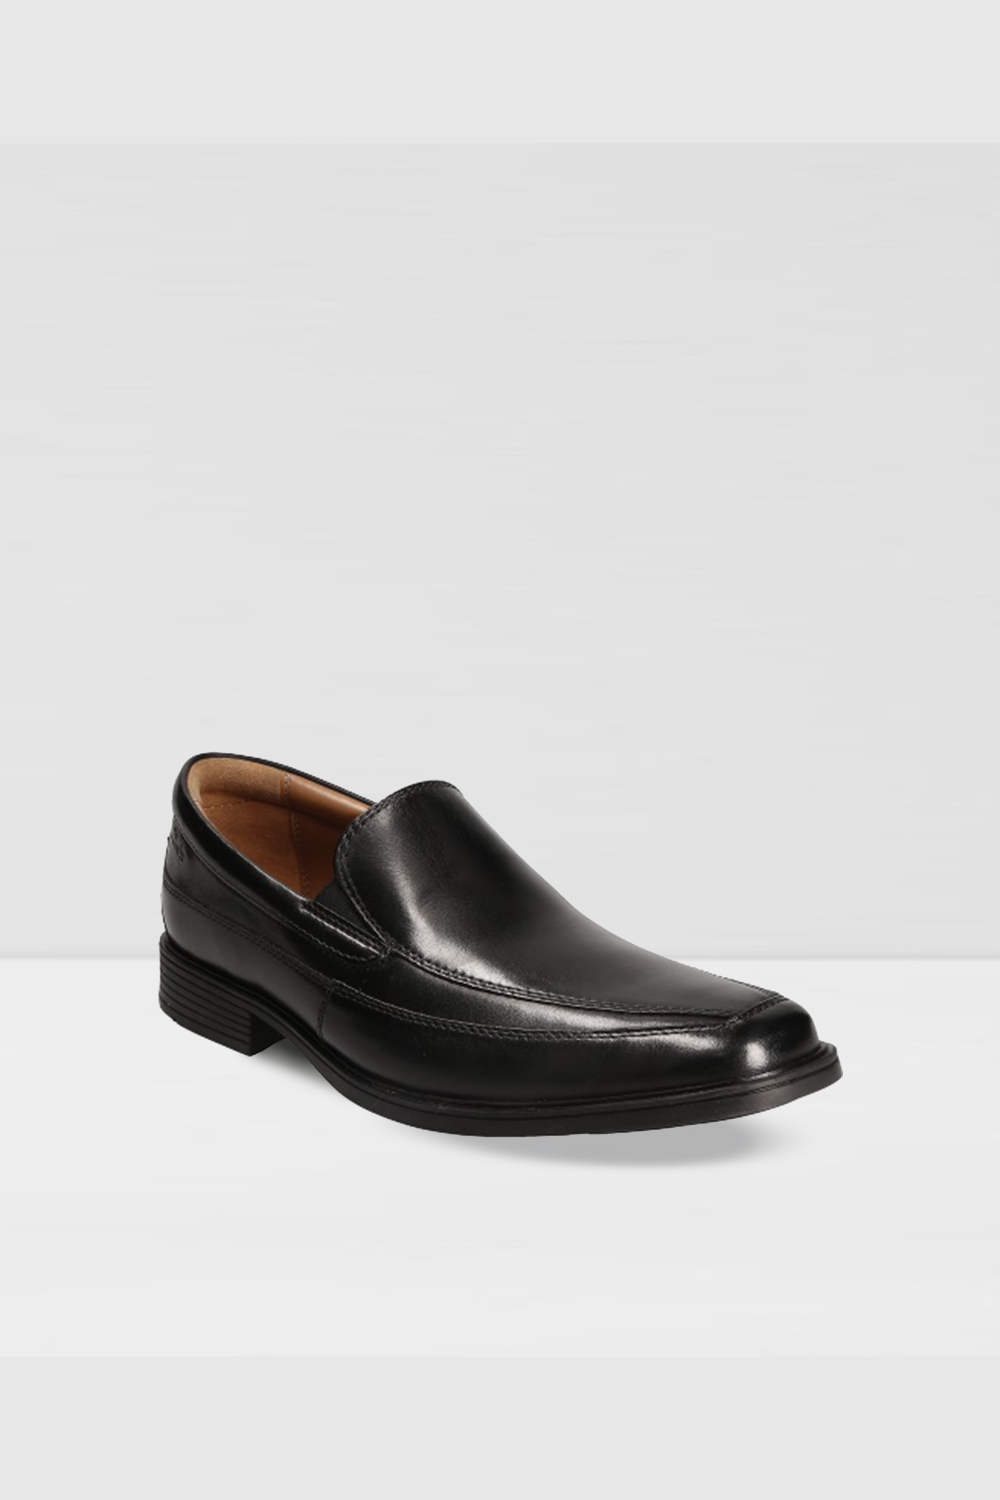 Clarks Whiddon Step Men'S Black Leather Loafers | Odel.lk